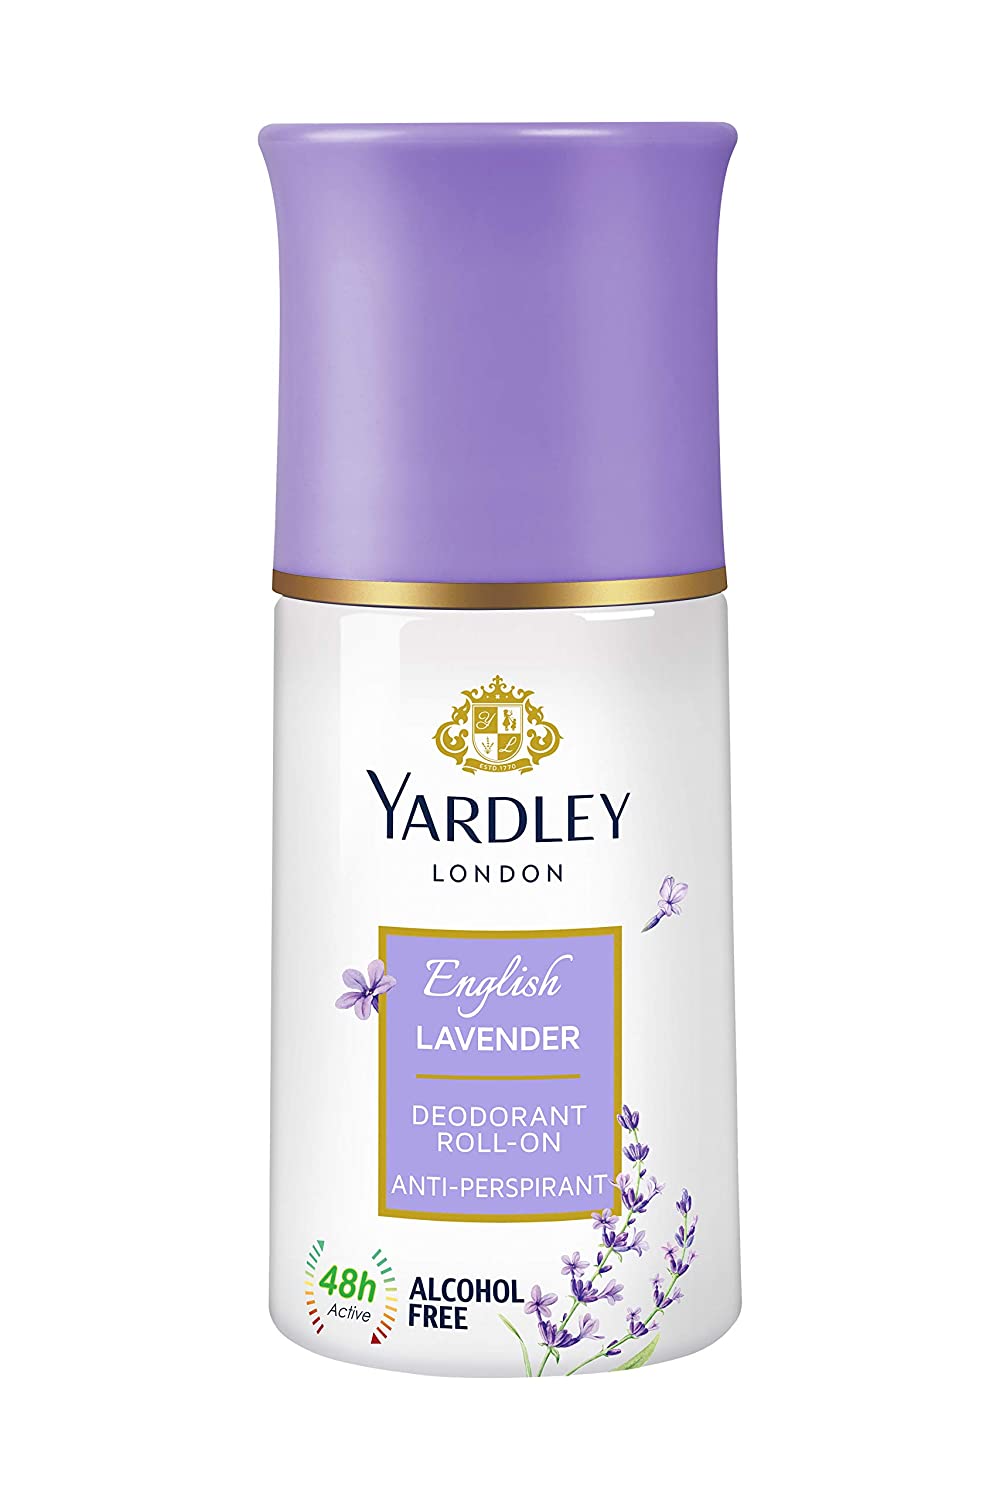 Yardley London Lavender Deodorant Roll on